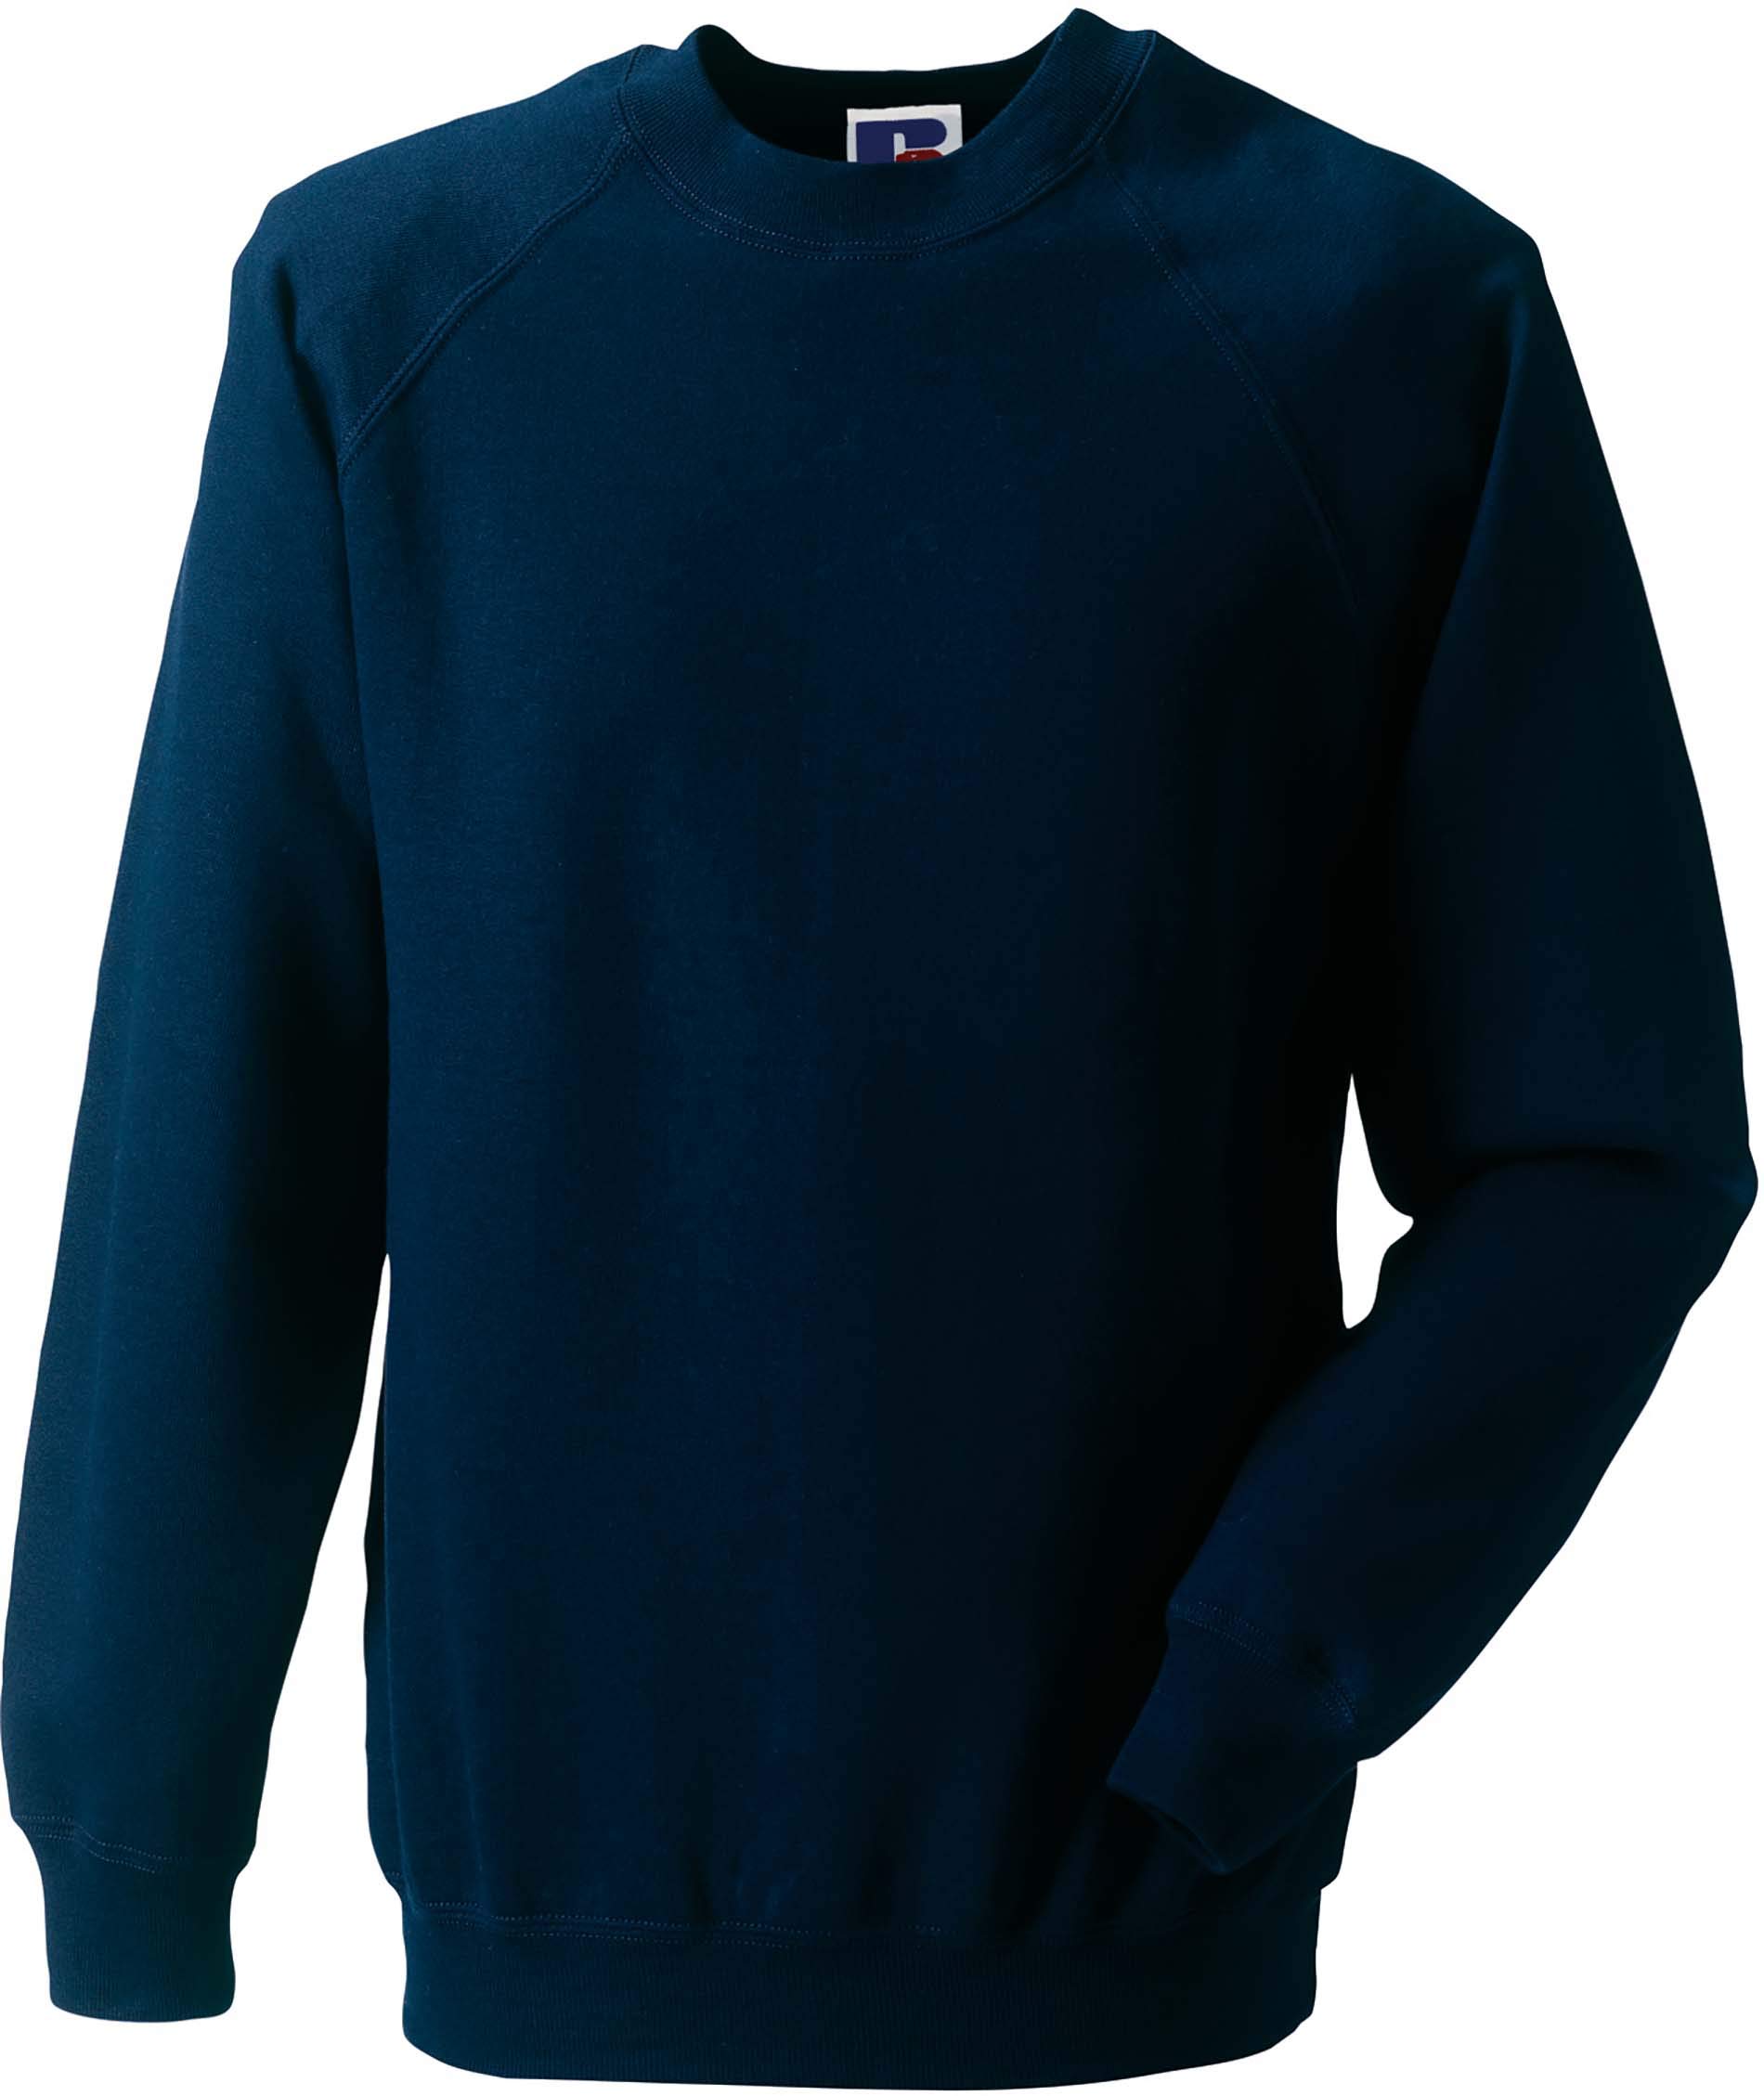 Russel Europe Herren Raglan Sweatshirt Pullover, Größe:L, Farbe:French Navy